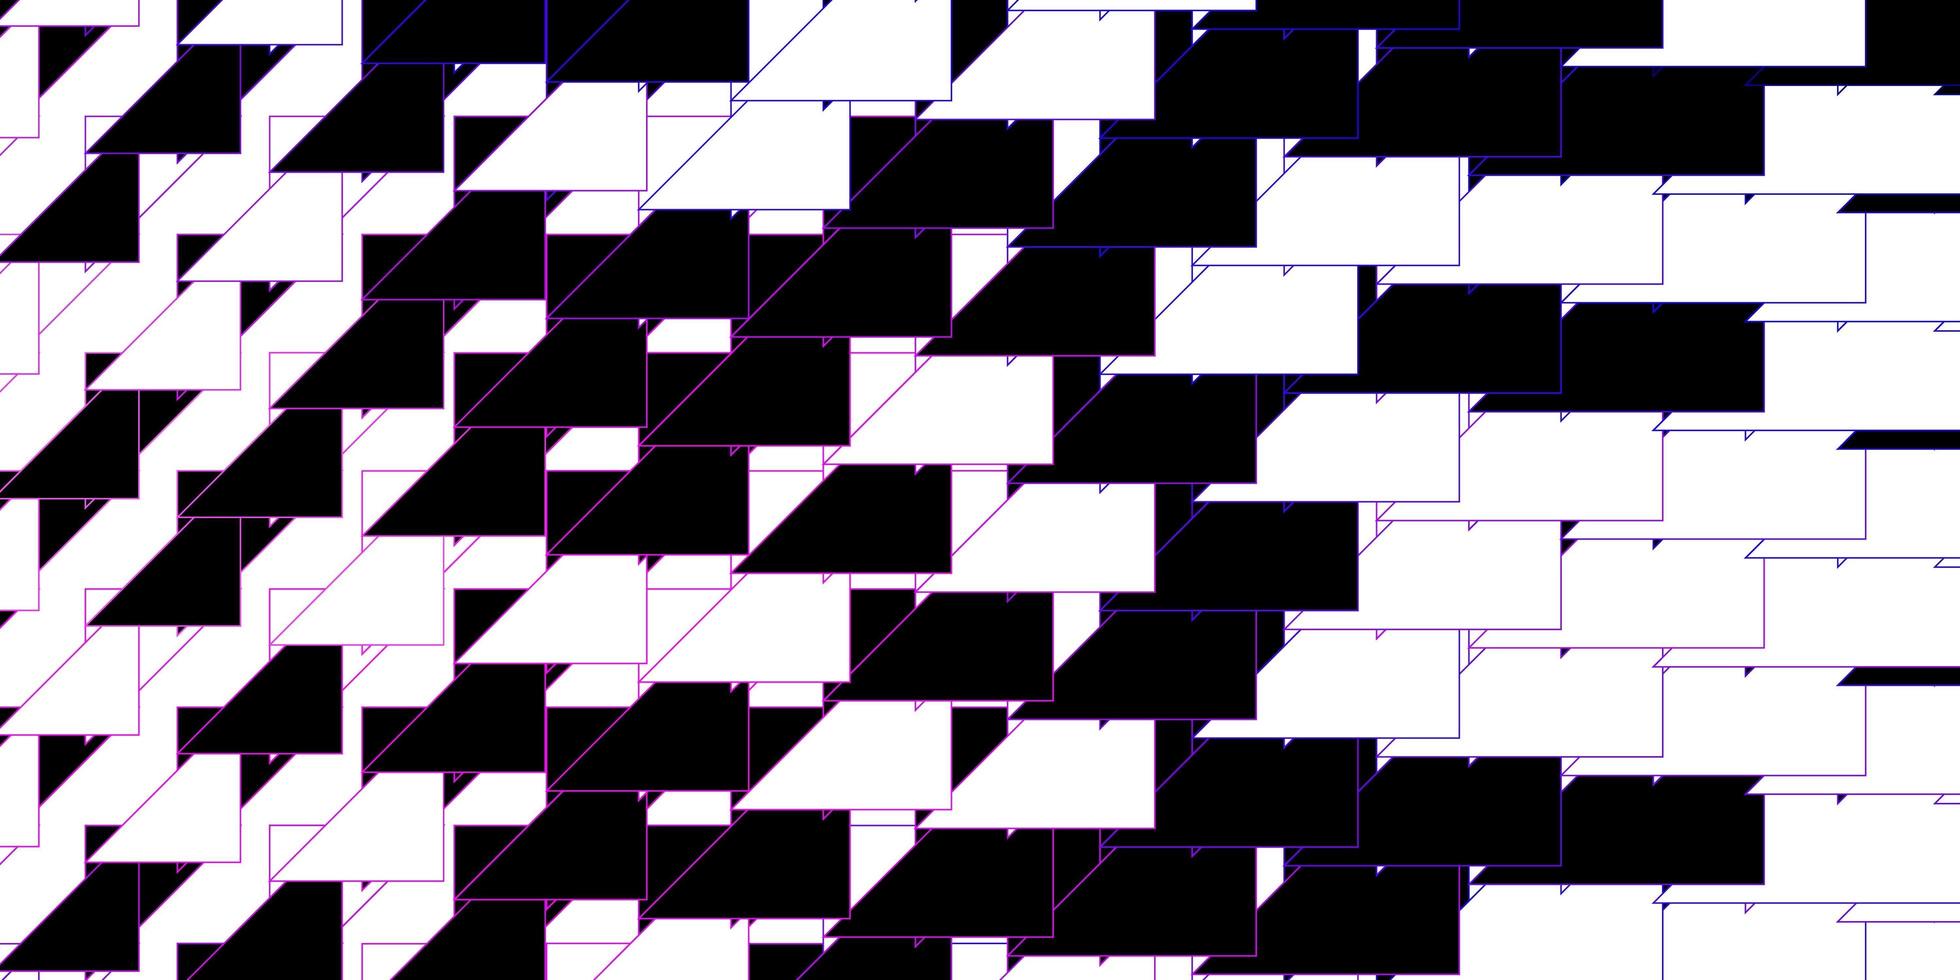 padrão de vetor rosa roxo escuro com ilustração geométrica de linhas com padrão de linhas desfocadas para anúncios publicitários